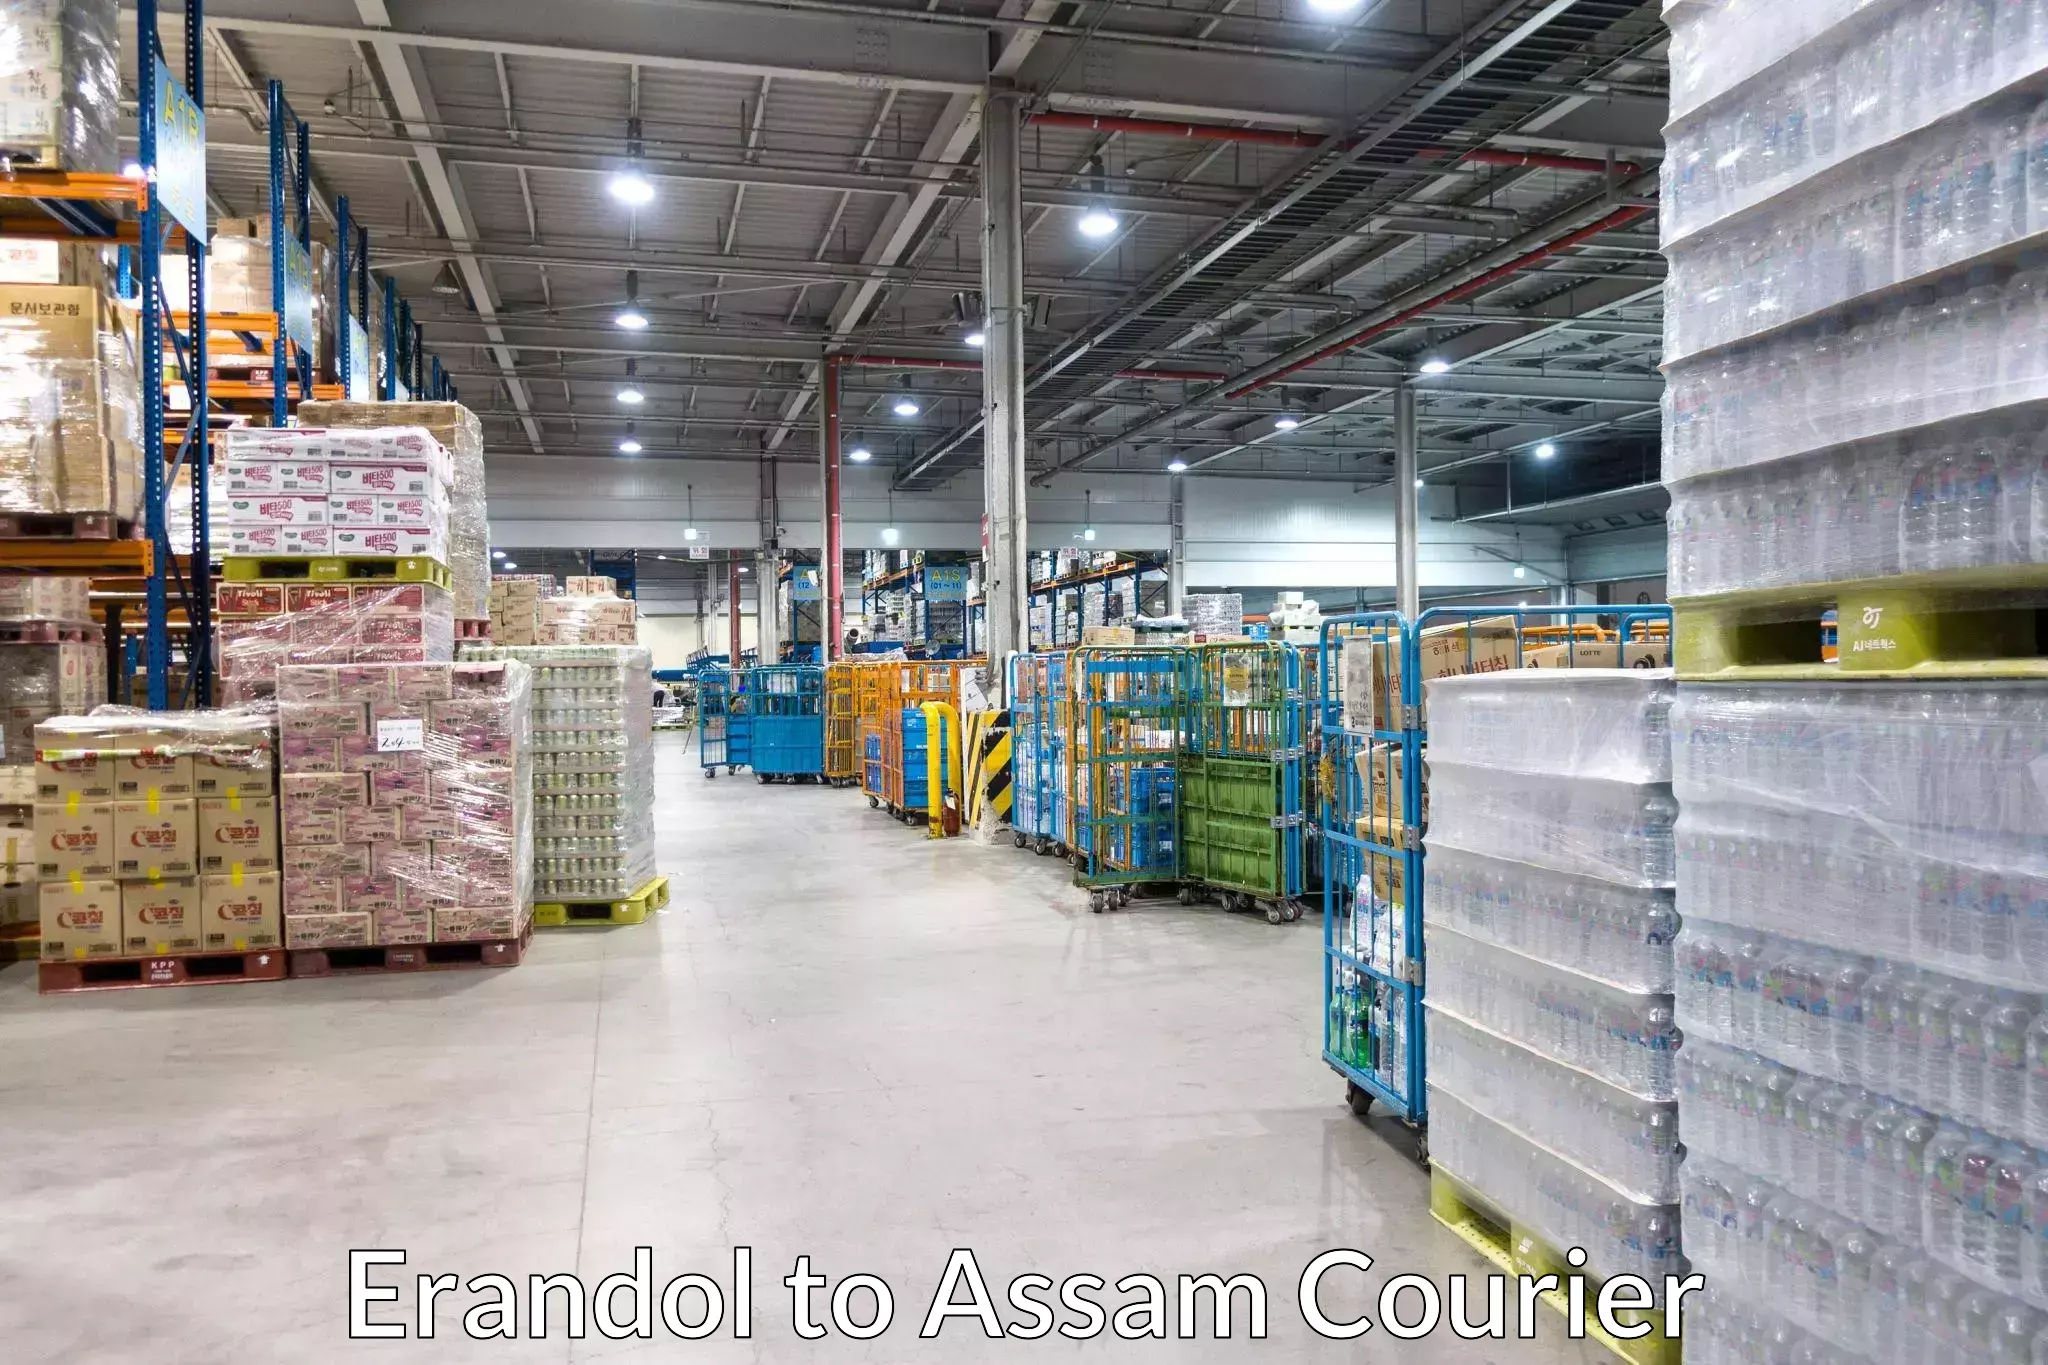 Courier rate comparison Erandol to Assam